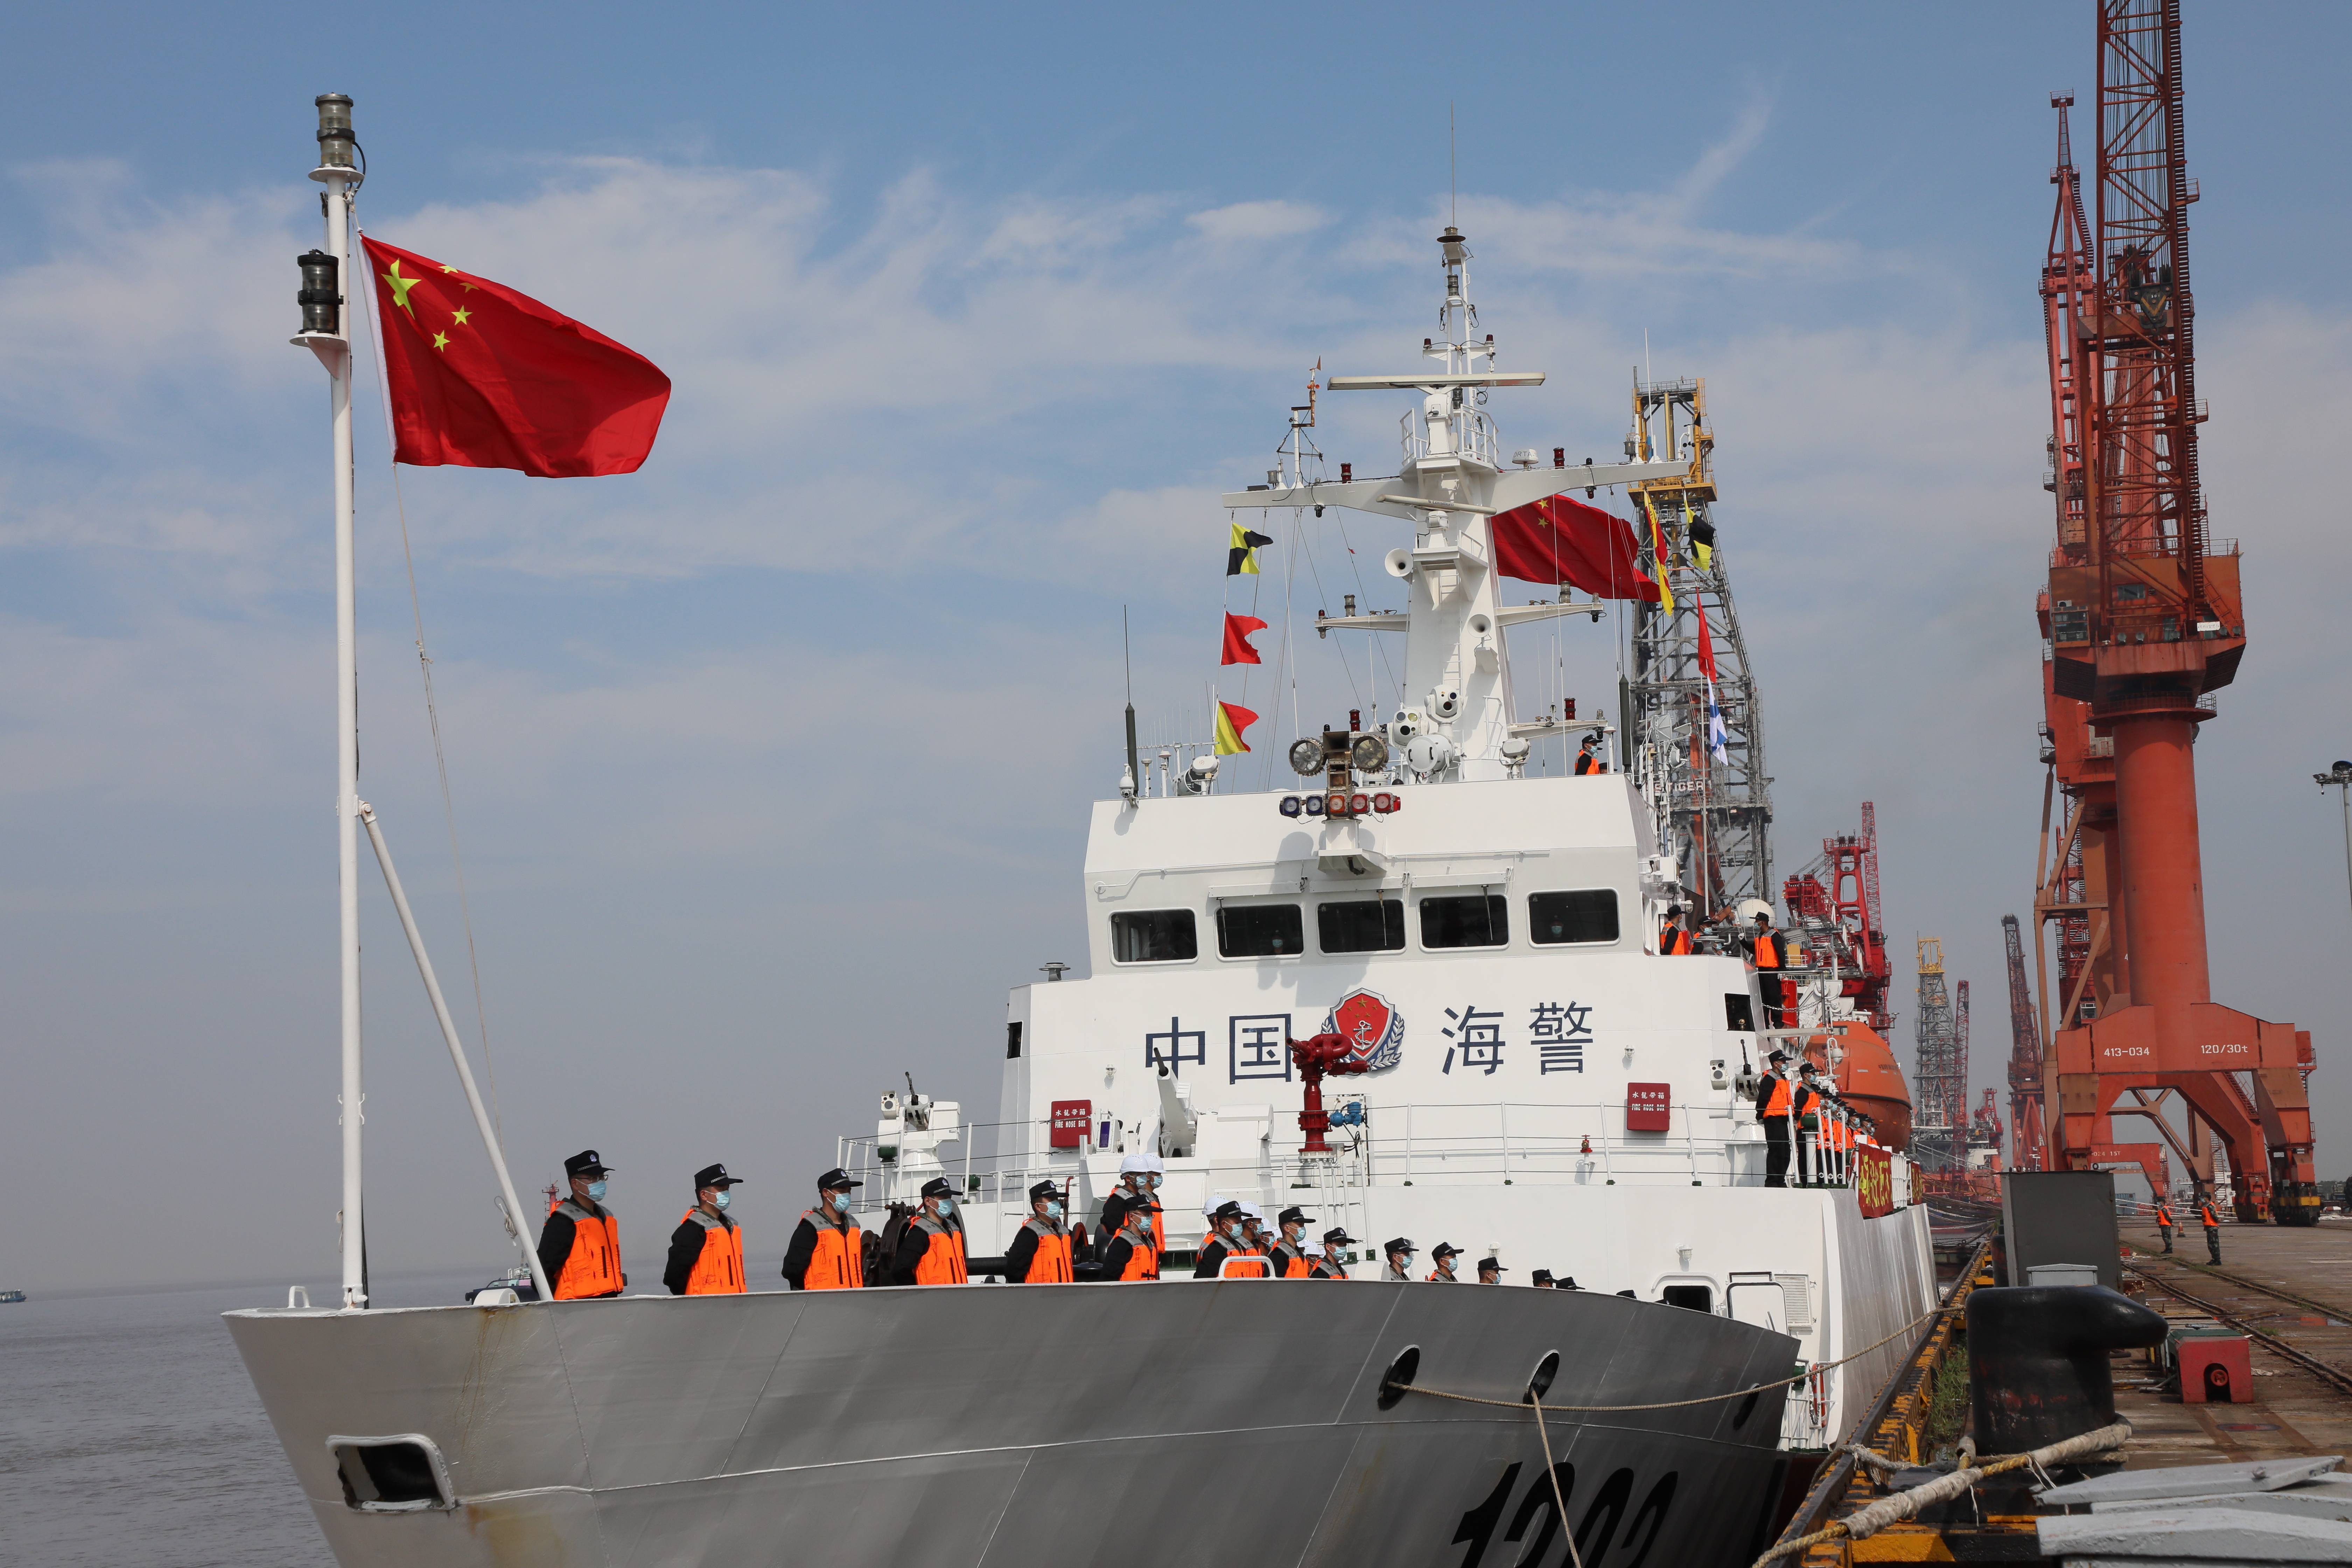 中国海警队的图片图片